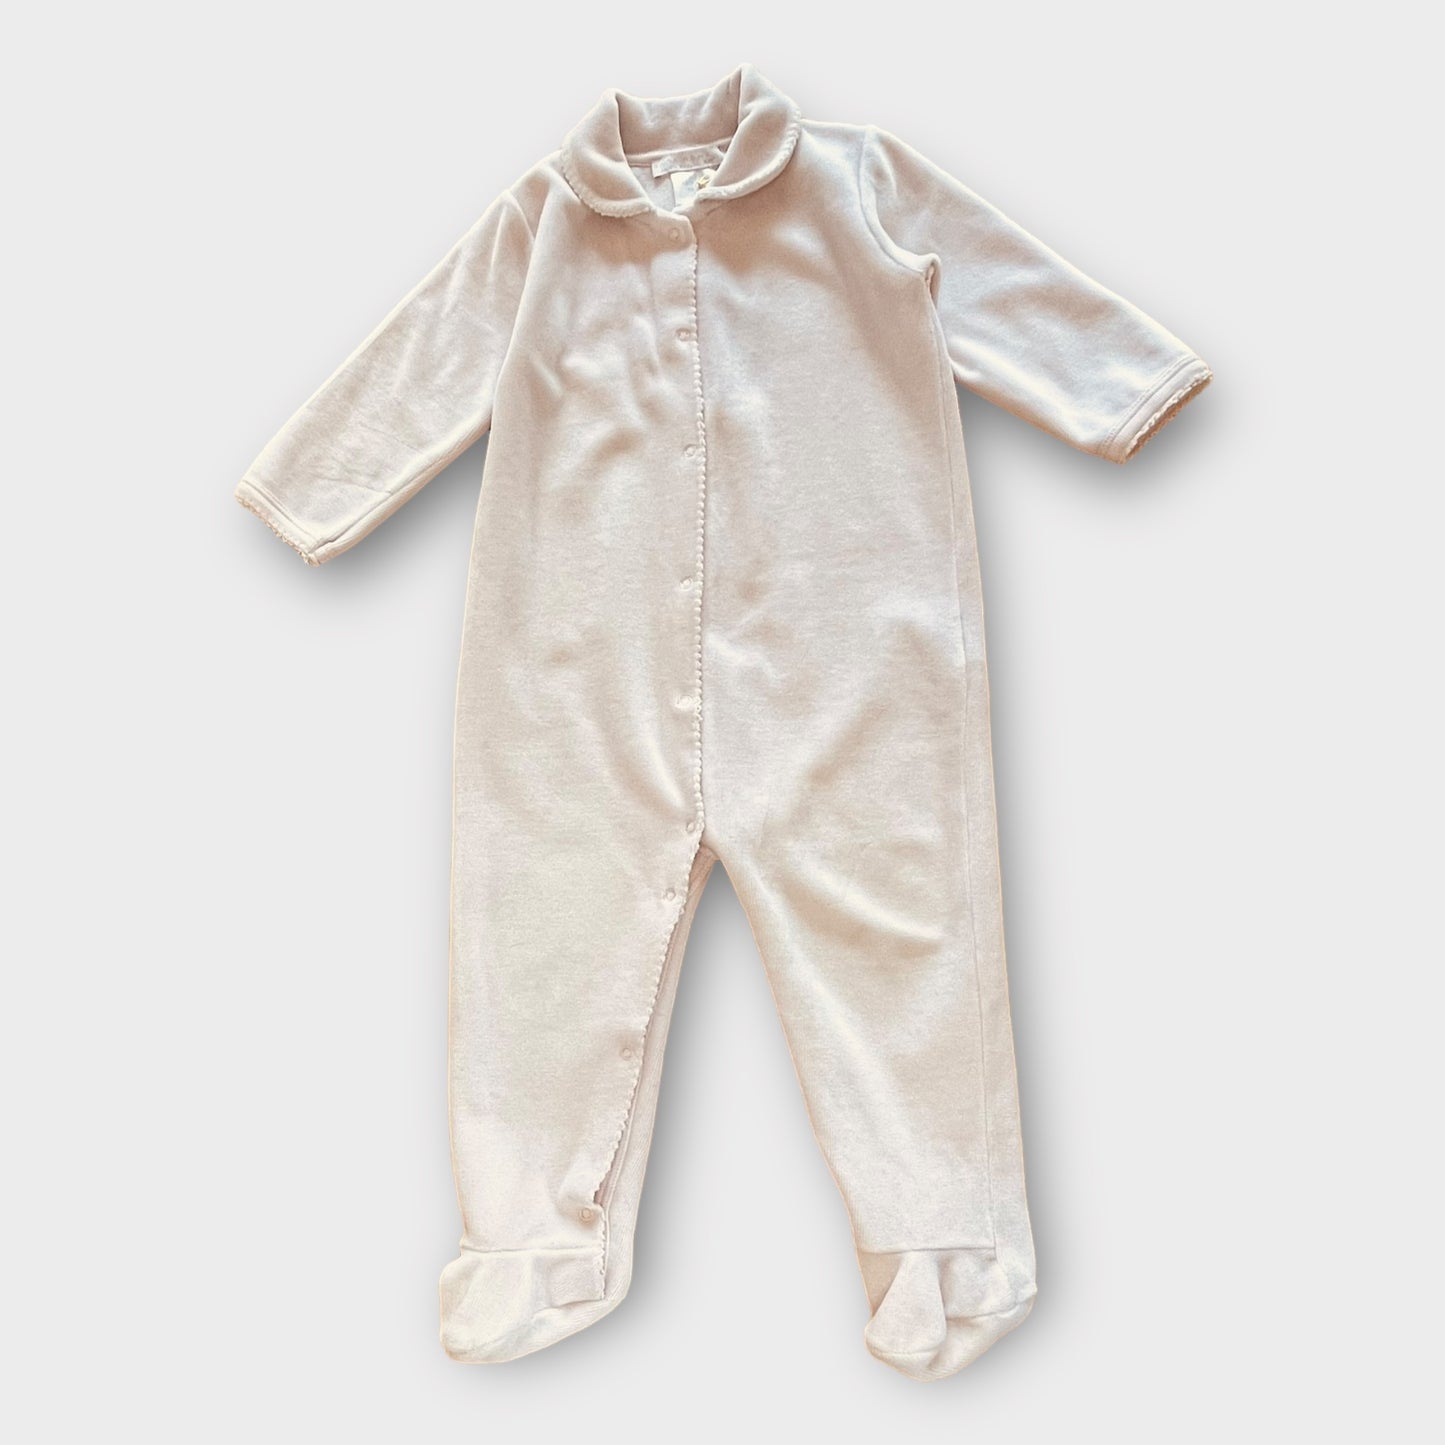 Zara Home - pyjama - 6 - 12 maanden